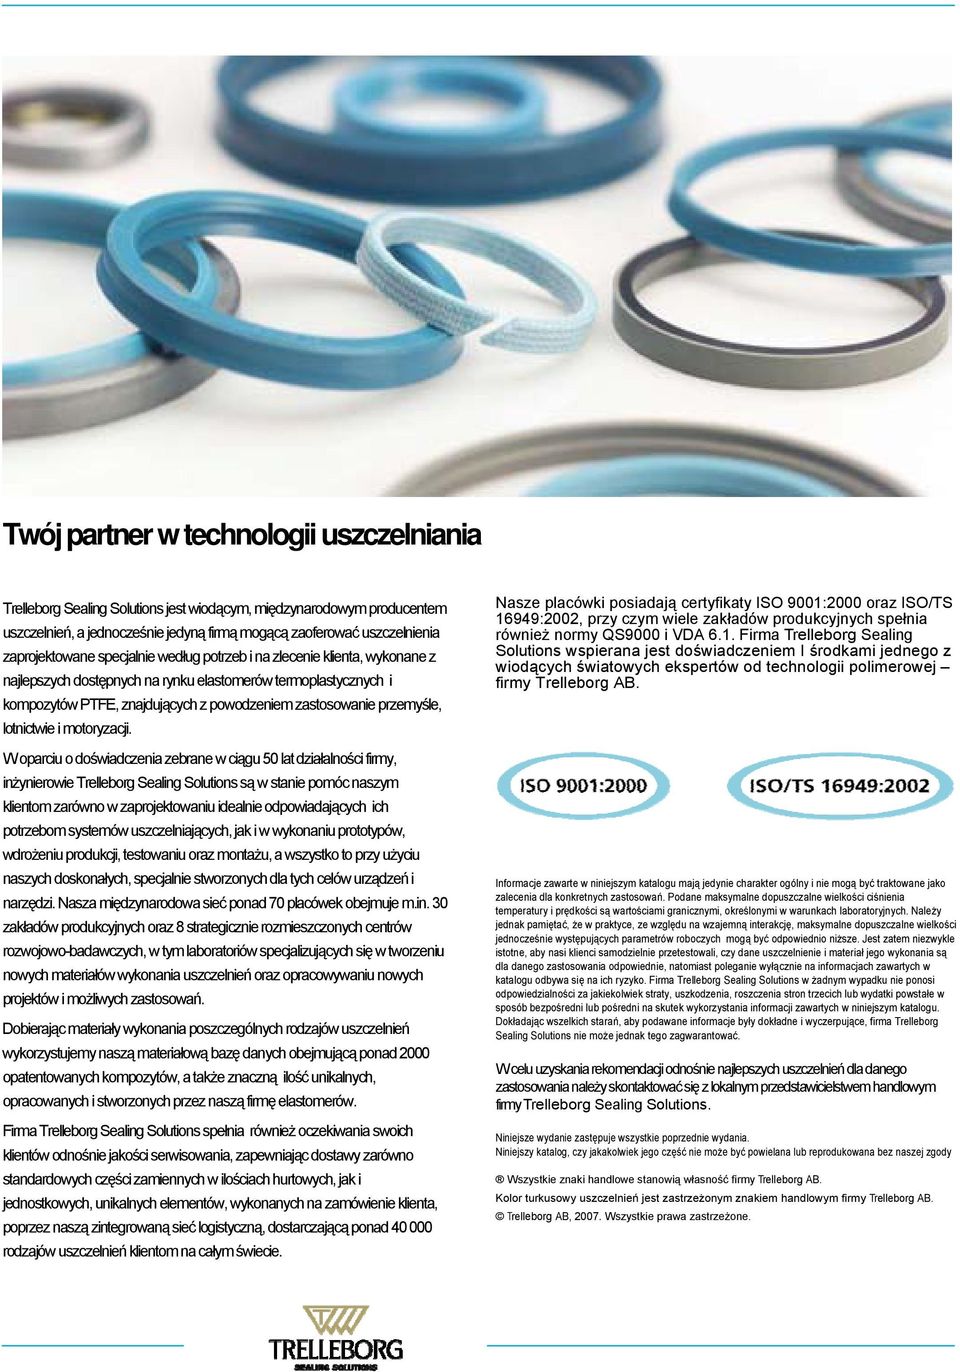 ISO/TS 16949:2002, przy czym wiele zakładów produkcyjnych spełnia również normy QS9000 i VDA 6.1. Firma Trelleborg Sealing Solutions wspierana jest doświadczeniem I środkami jednego z wiodących światowych ekspertów od technologii polimerowej firmy Trelleborg AB.